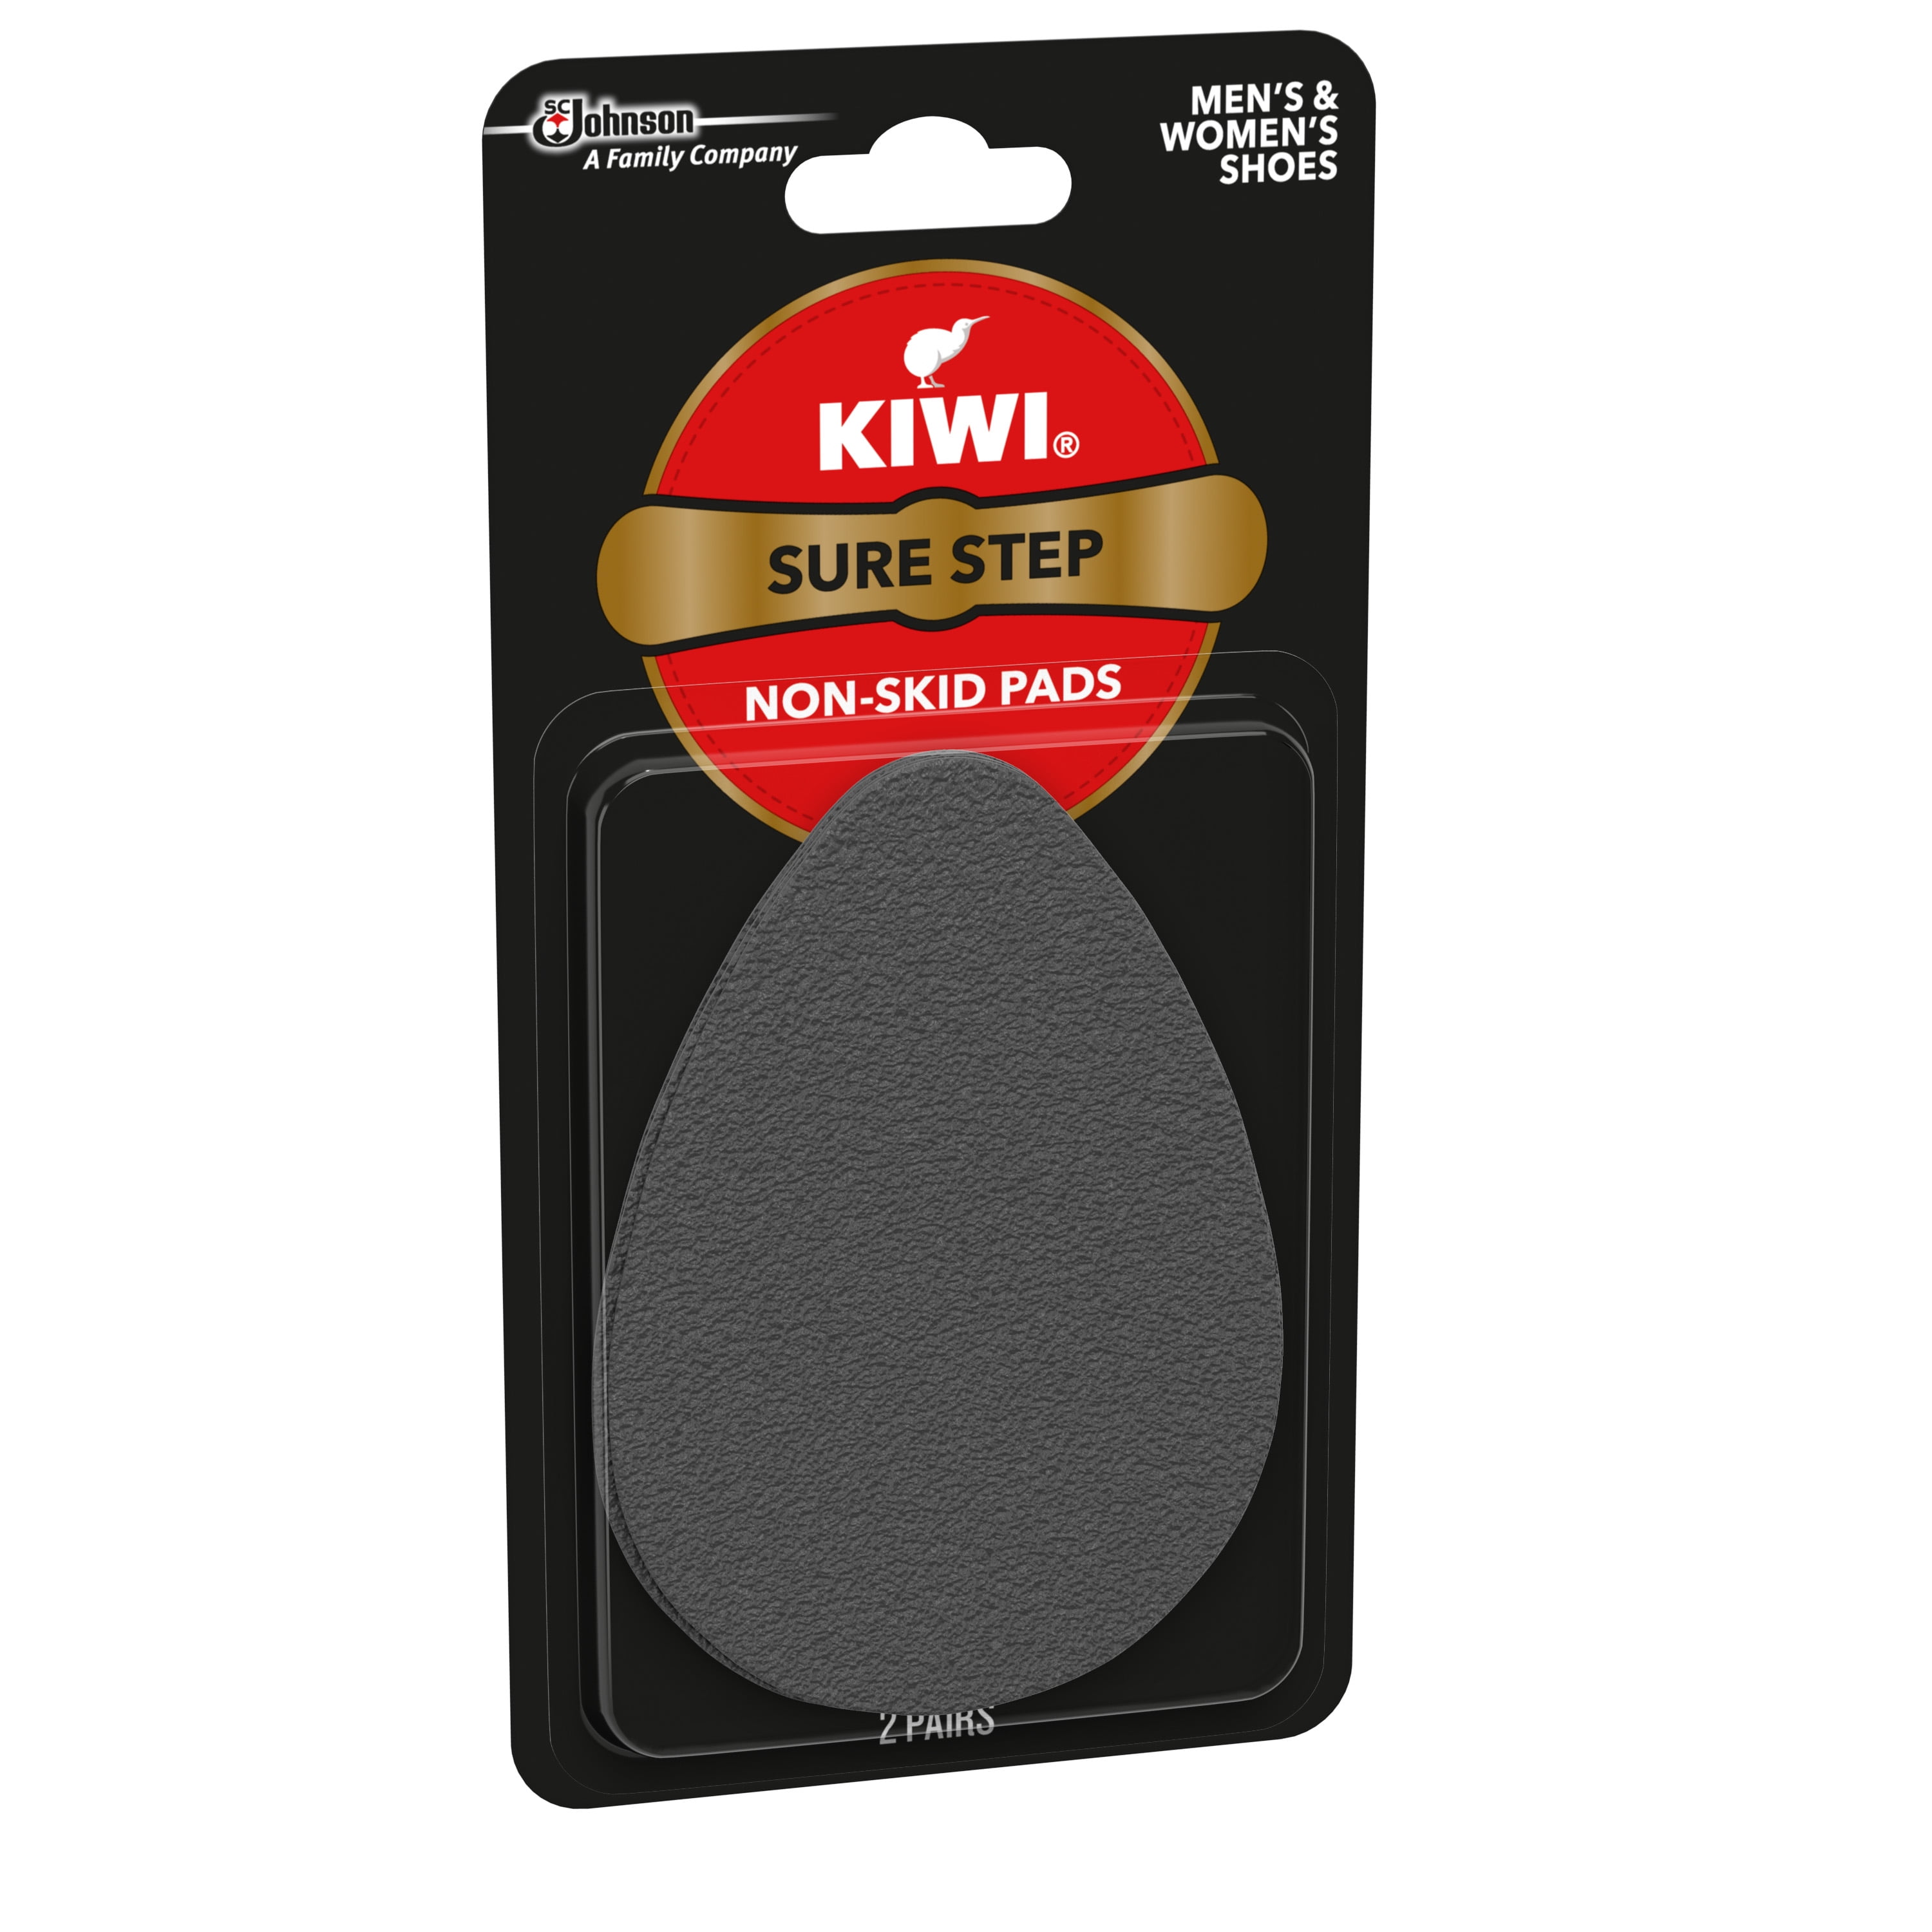 KIWI Sure Step Non-Skid Pads - 2 pairs 